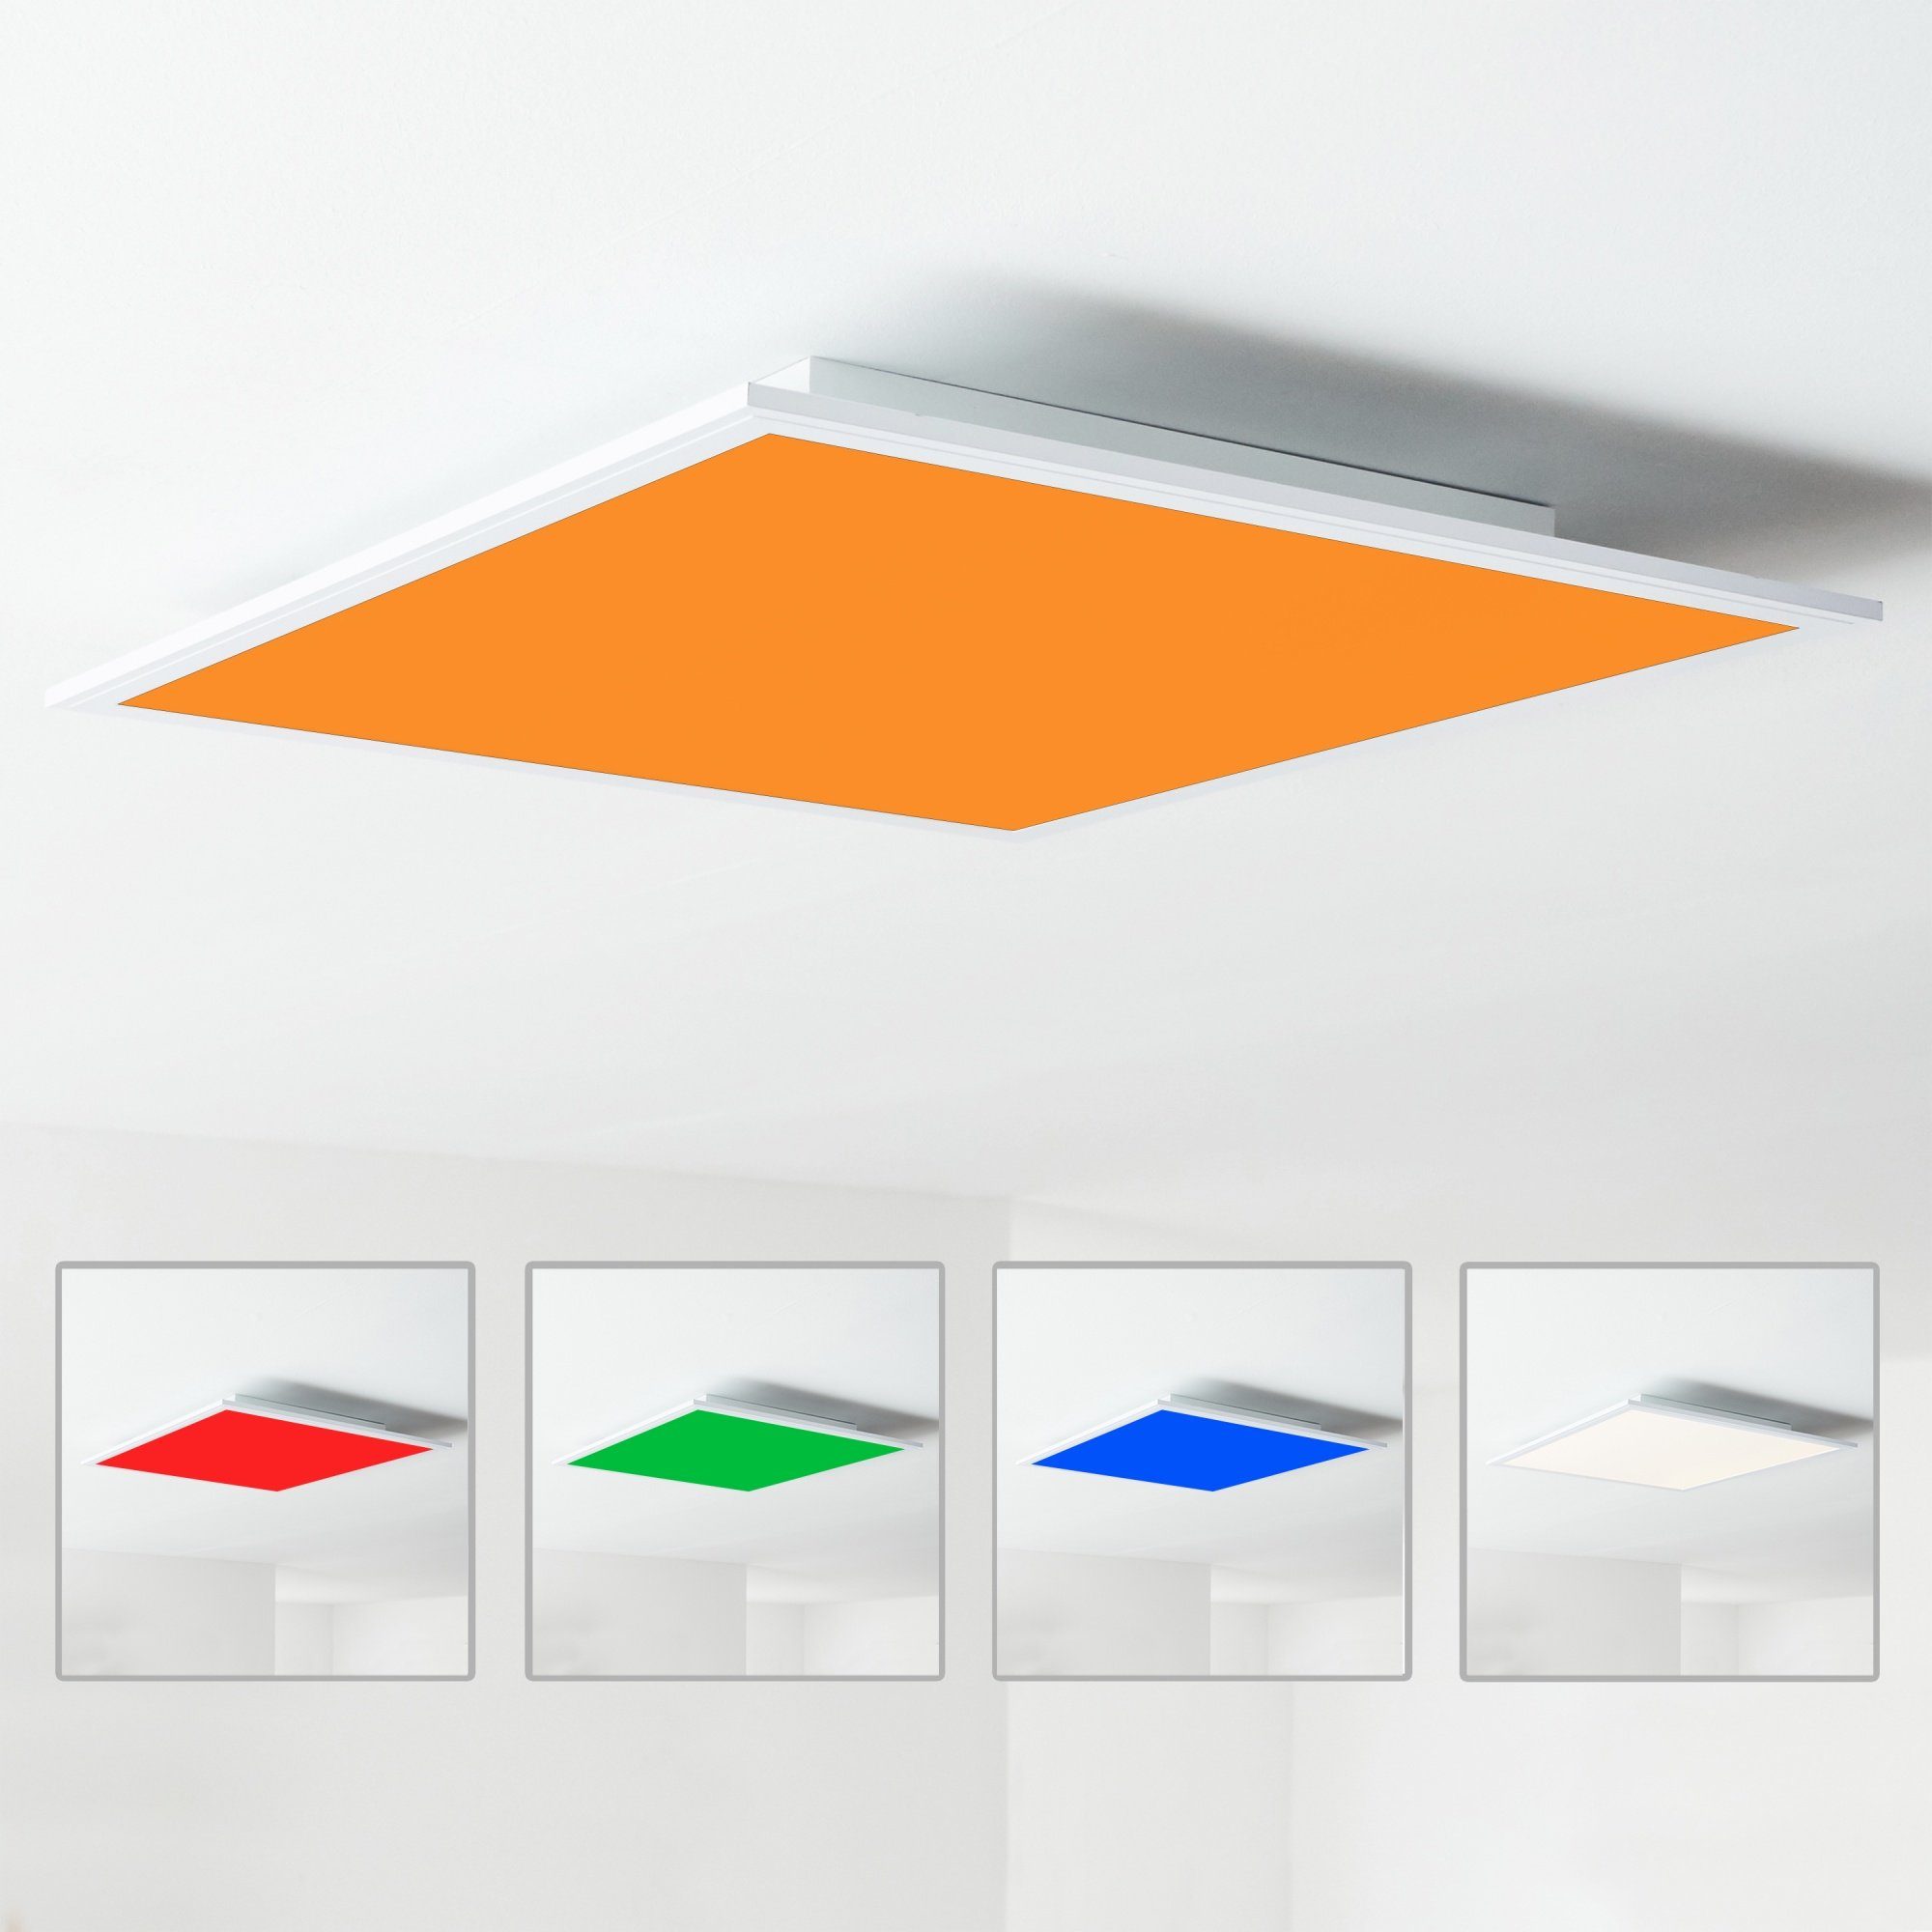 Lightbox Deckenleuchte, CCT - über Fernbedienung, LED fest integriert, warmweiß - kaltweiß, LED Deckenaufbau-Paneel, inkl. Fernbedienung, Metall/Kunststoff, weiß